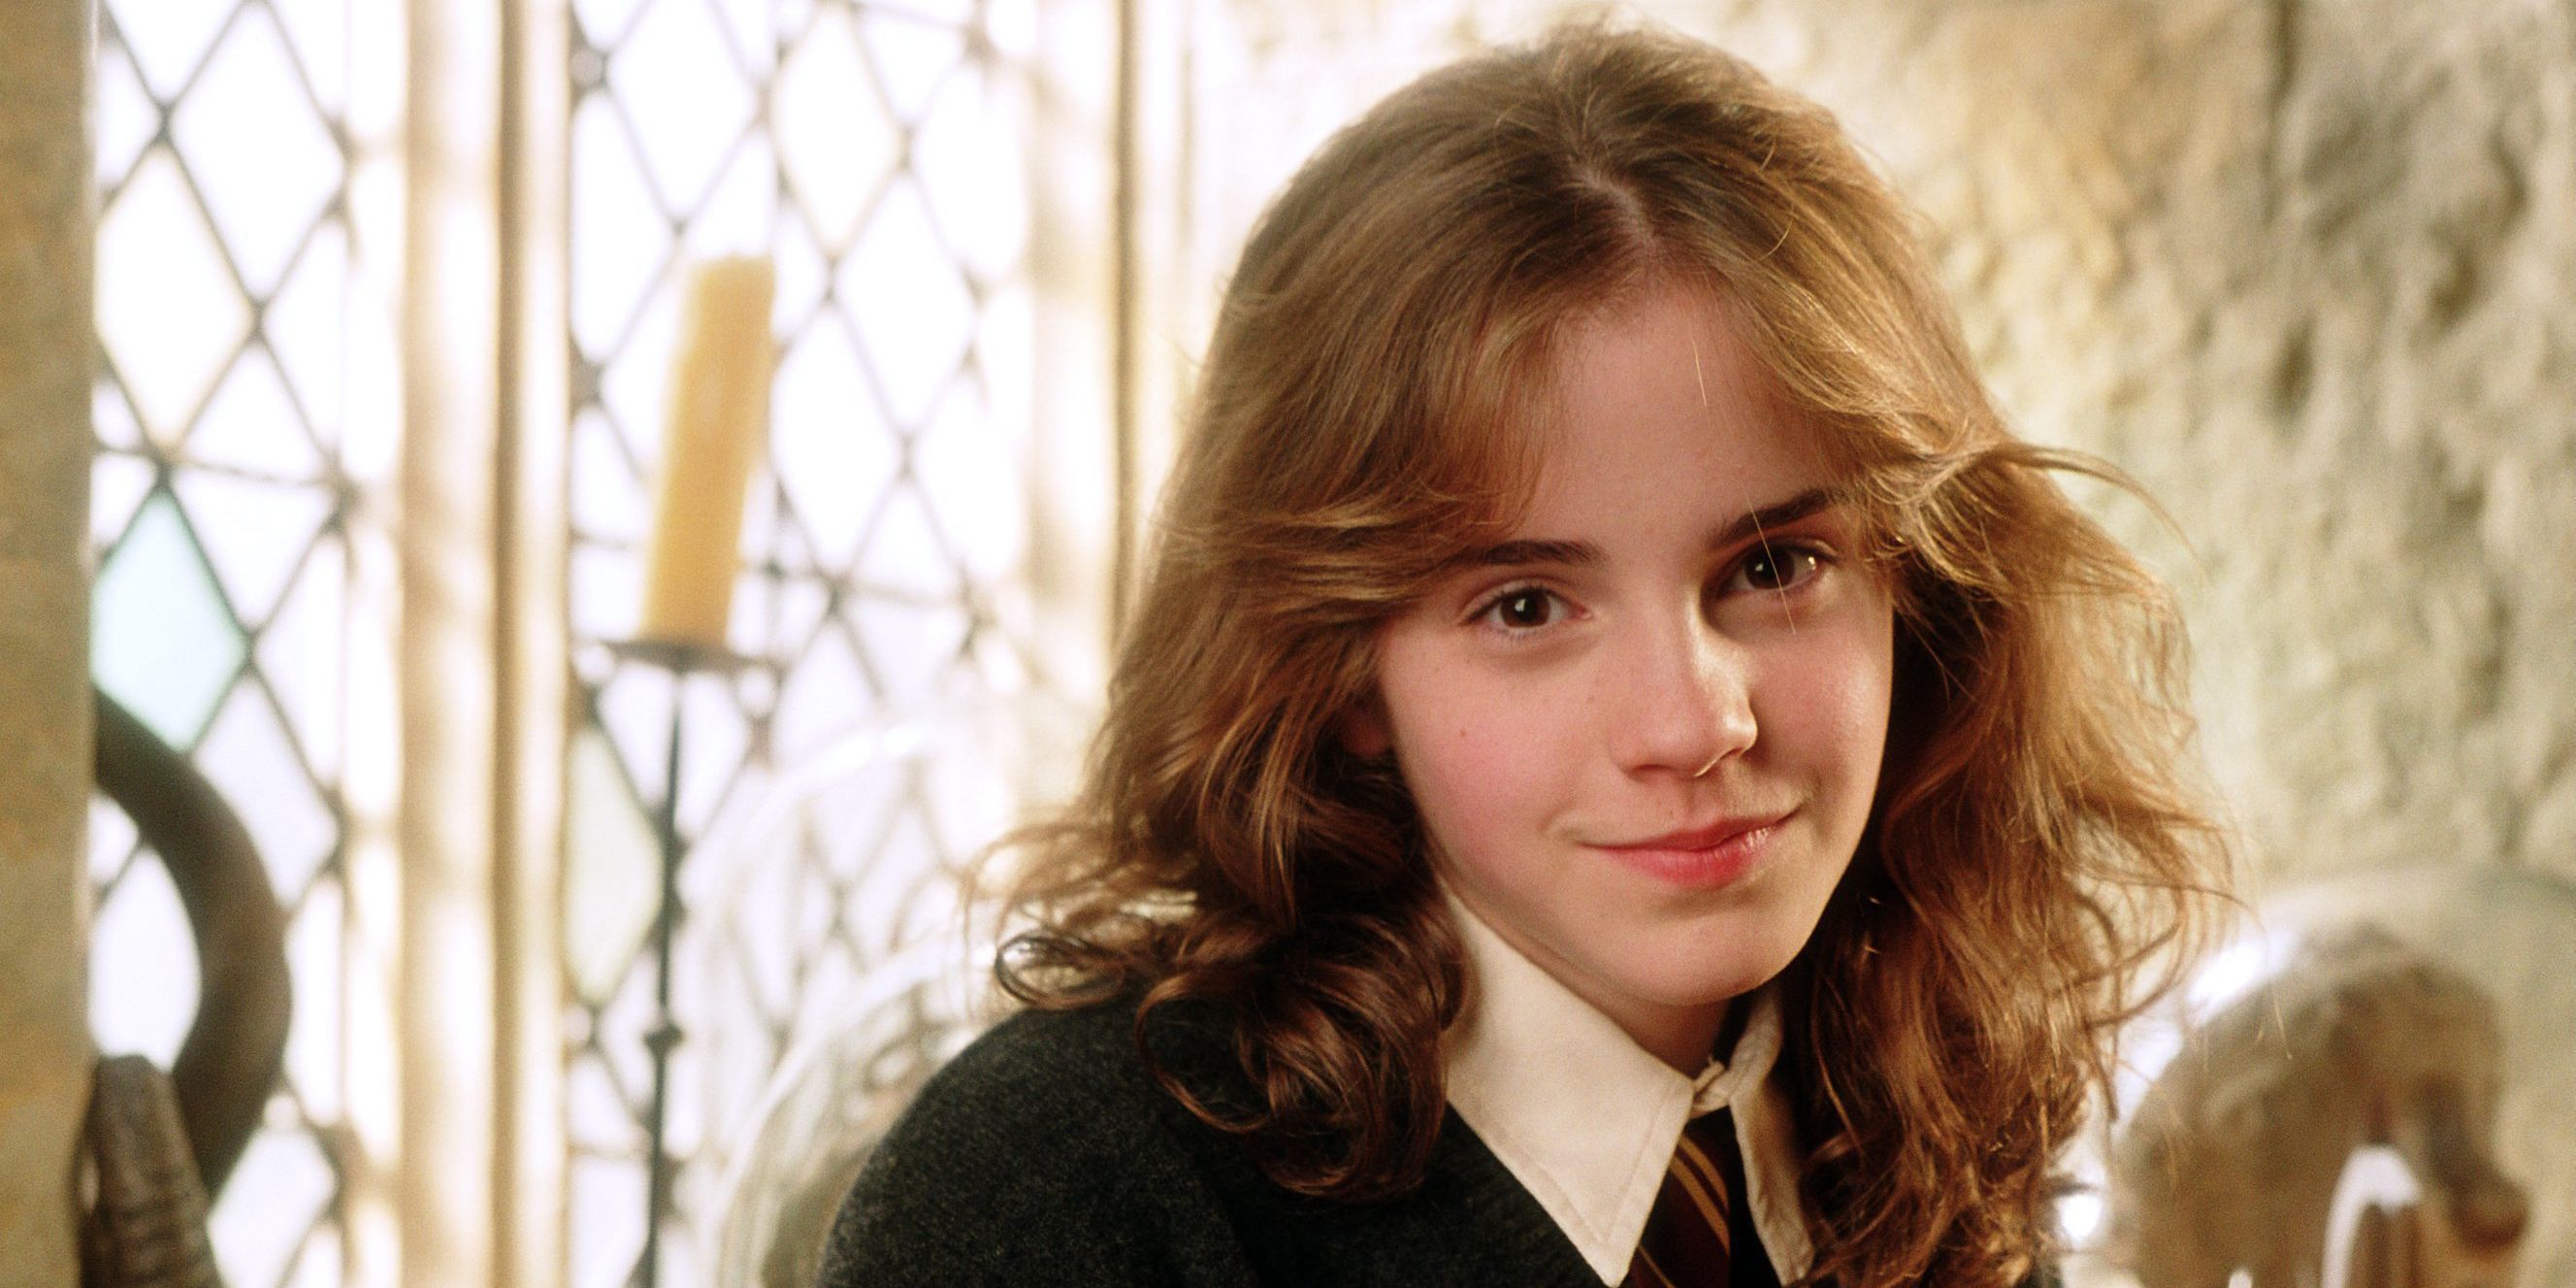 J.K. la teoría fan sobre Hermione Granger - J.K. Rowling confirma en Twitter la teoría de Hermione que sospechaban los fans de Harry Potter